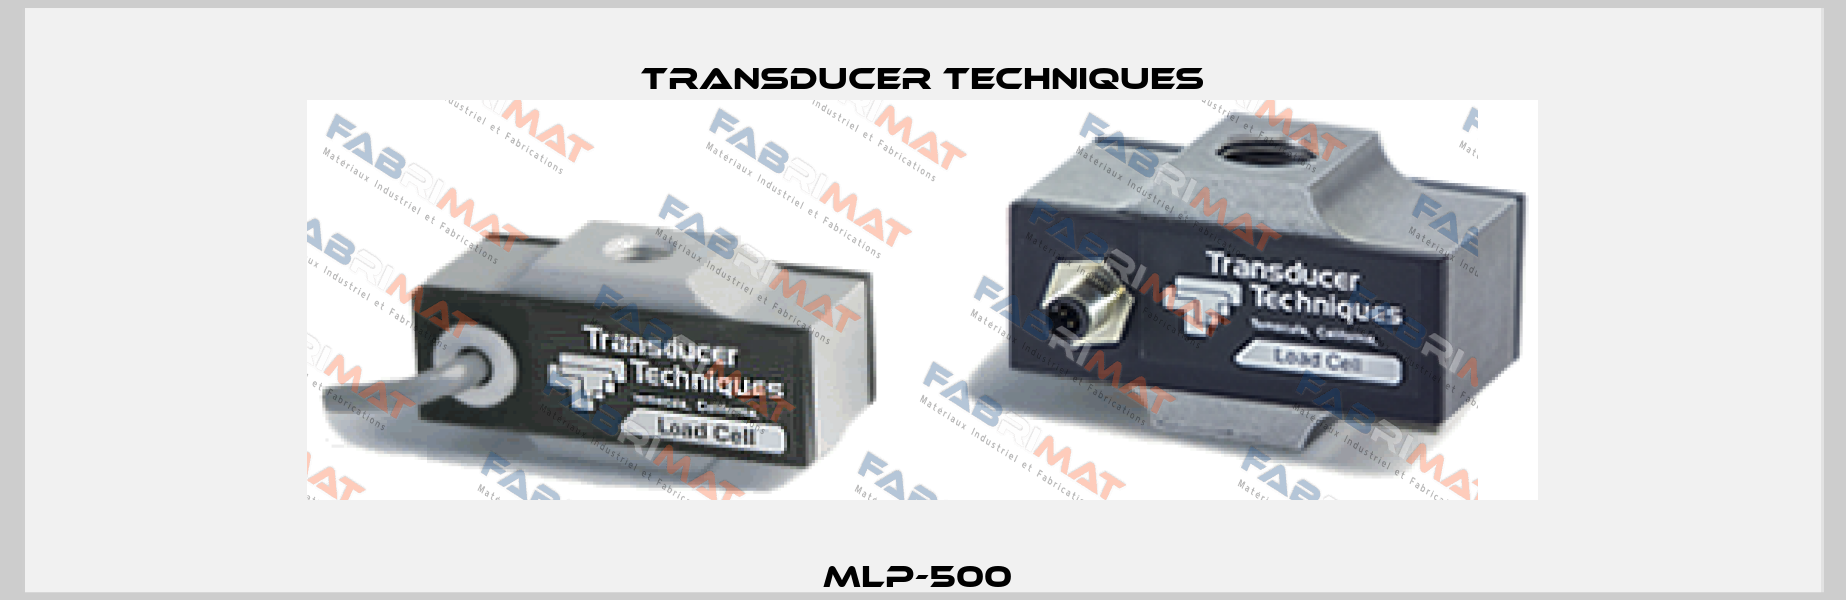 MLP-500  Transducer Techniques